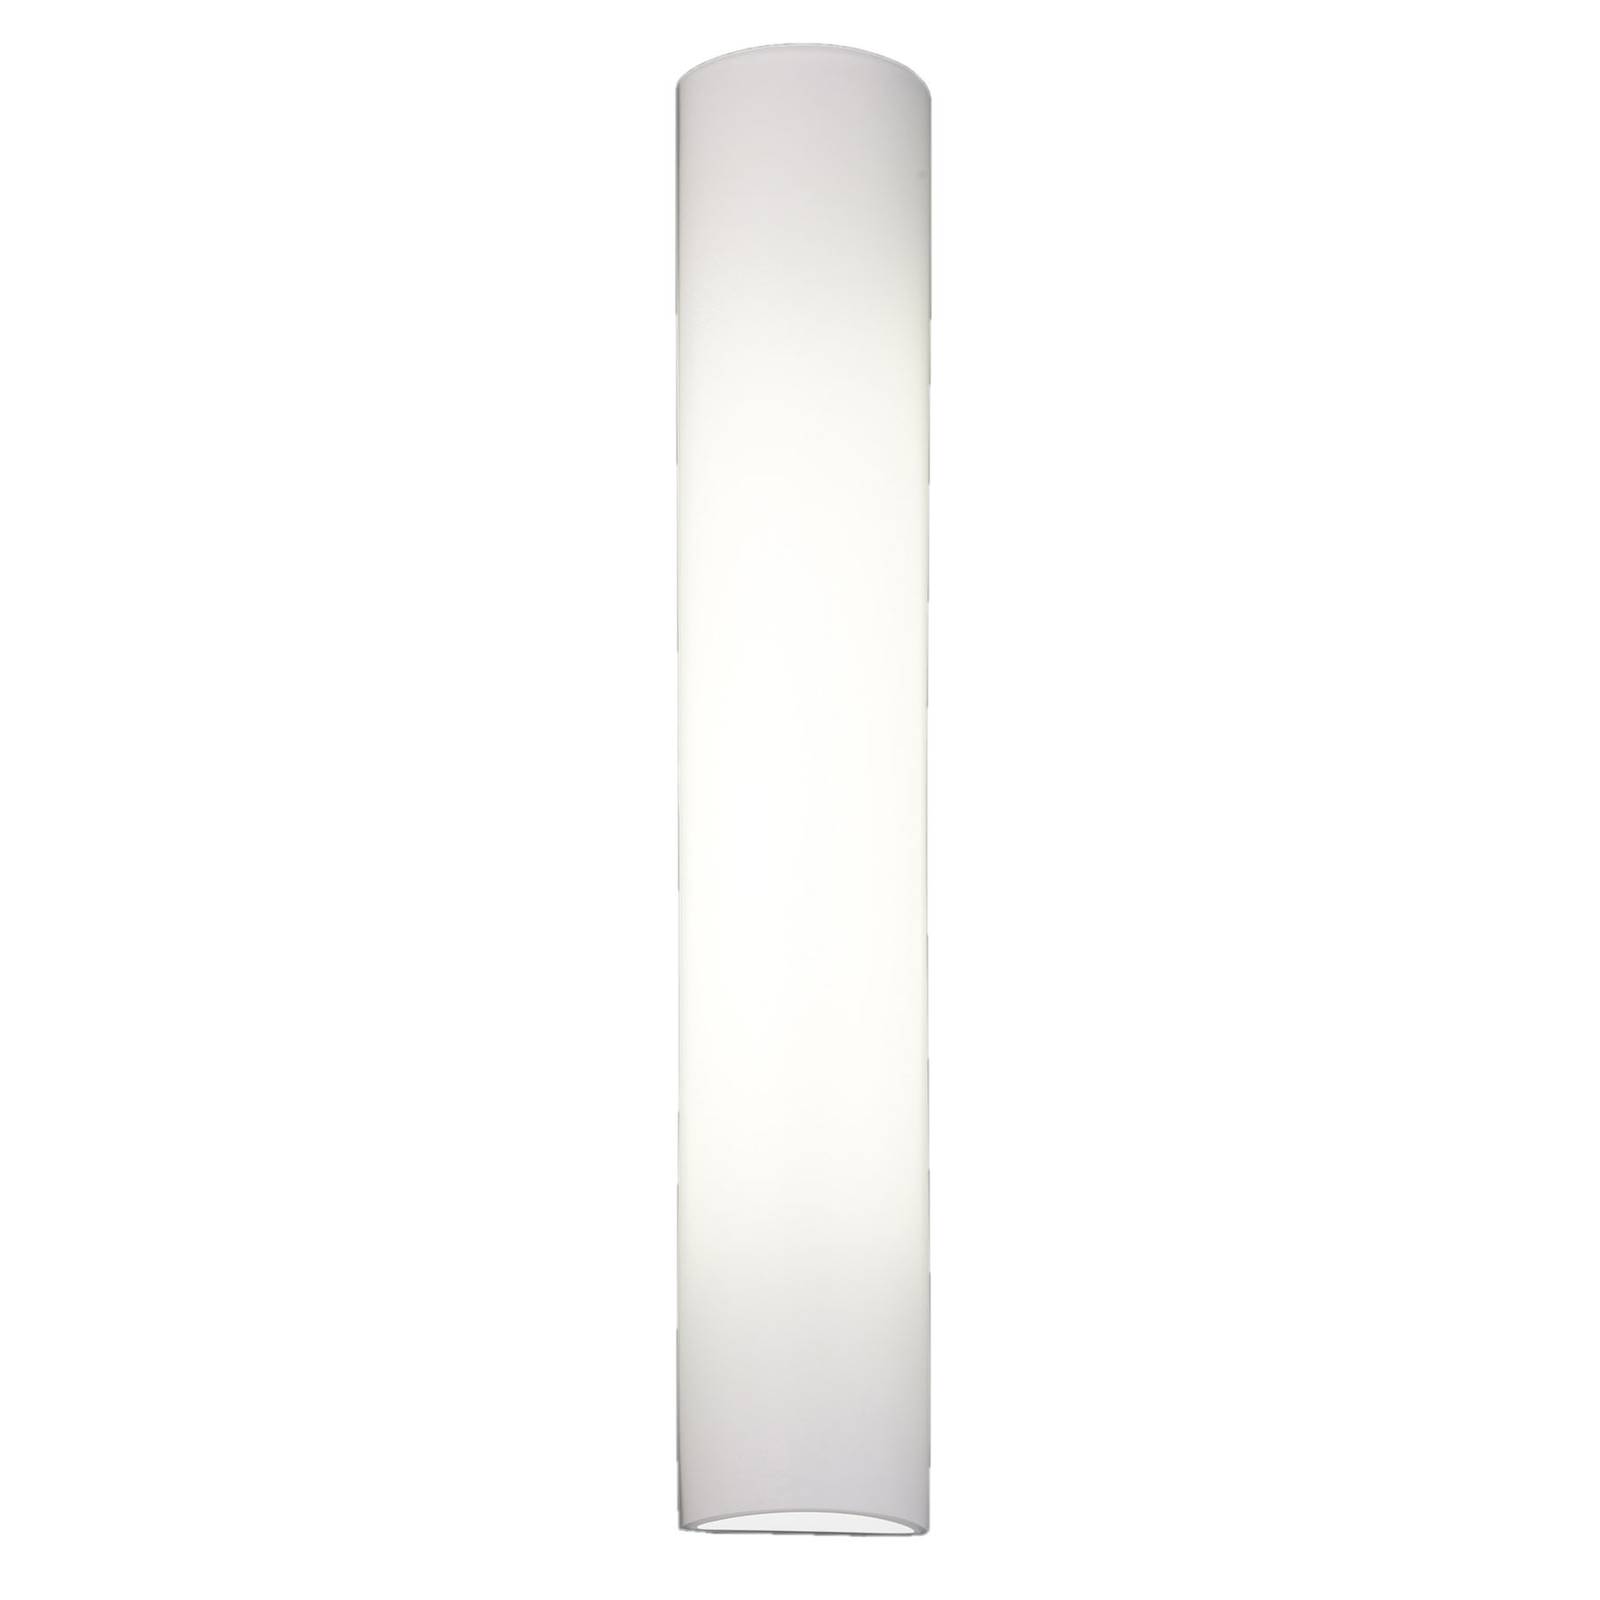 BANKAMP Cromo LED-vegglampe av glass høyde 54cm